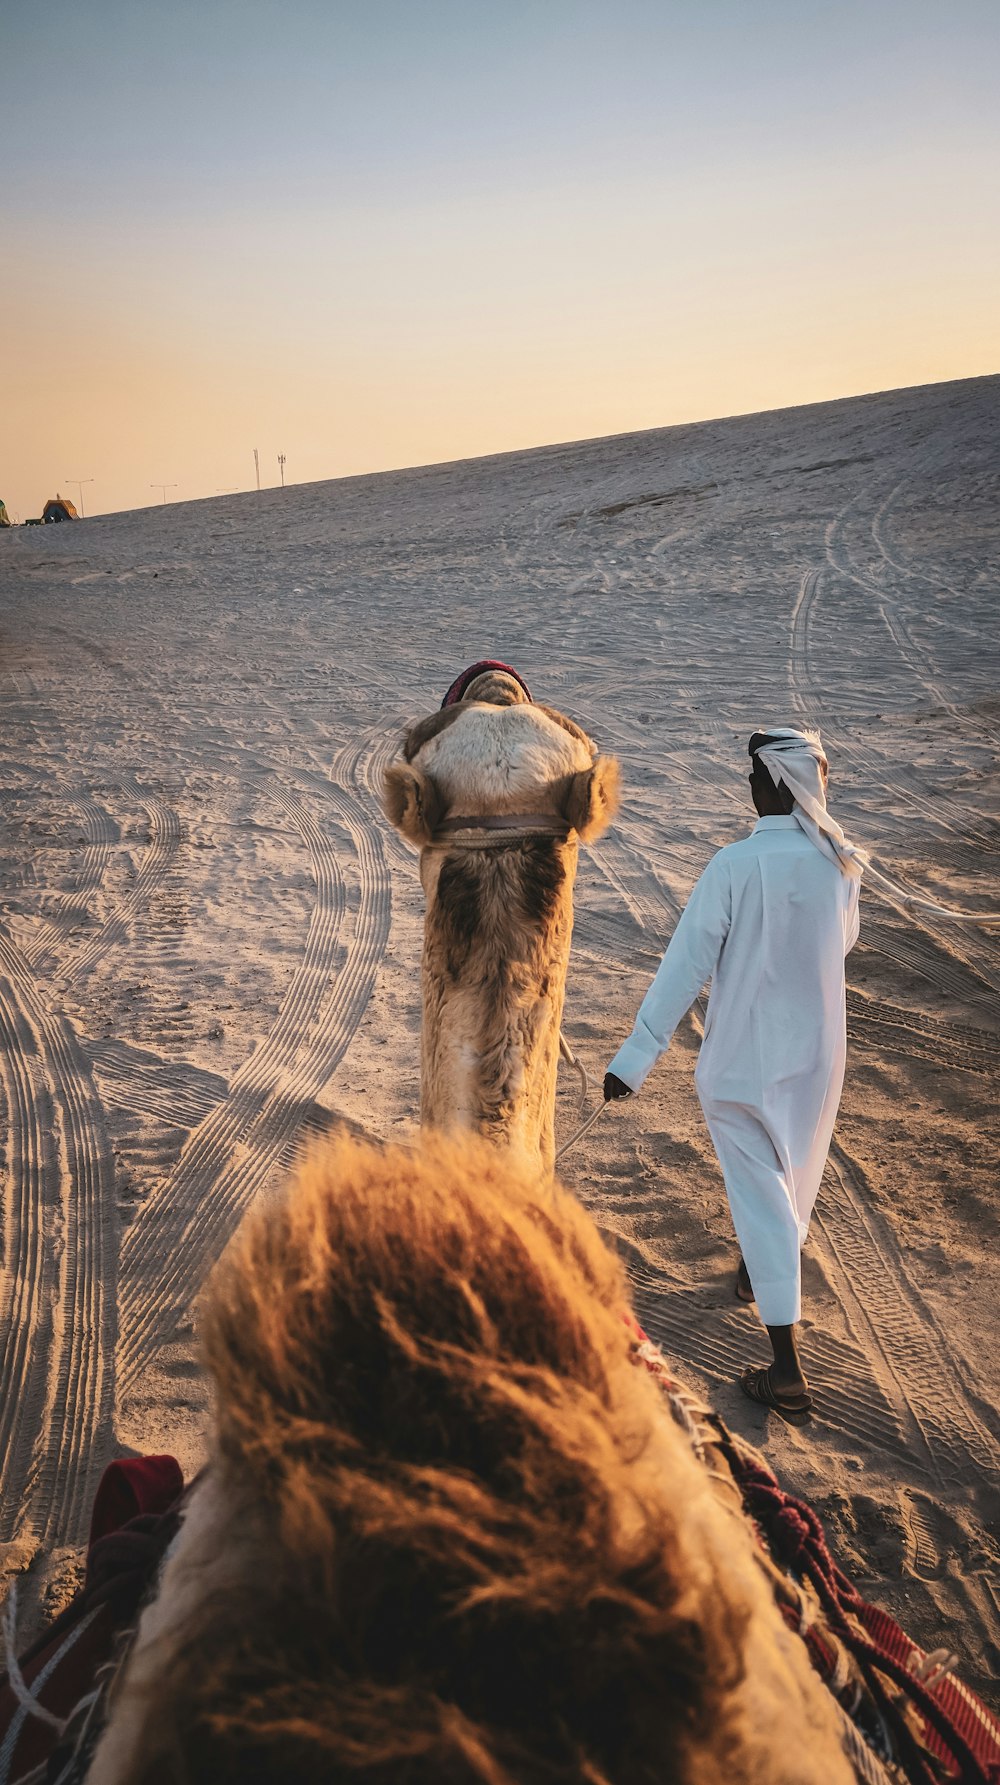 Mann in weißer Robe steht tagsüber neben braunem Kamel